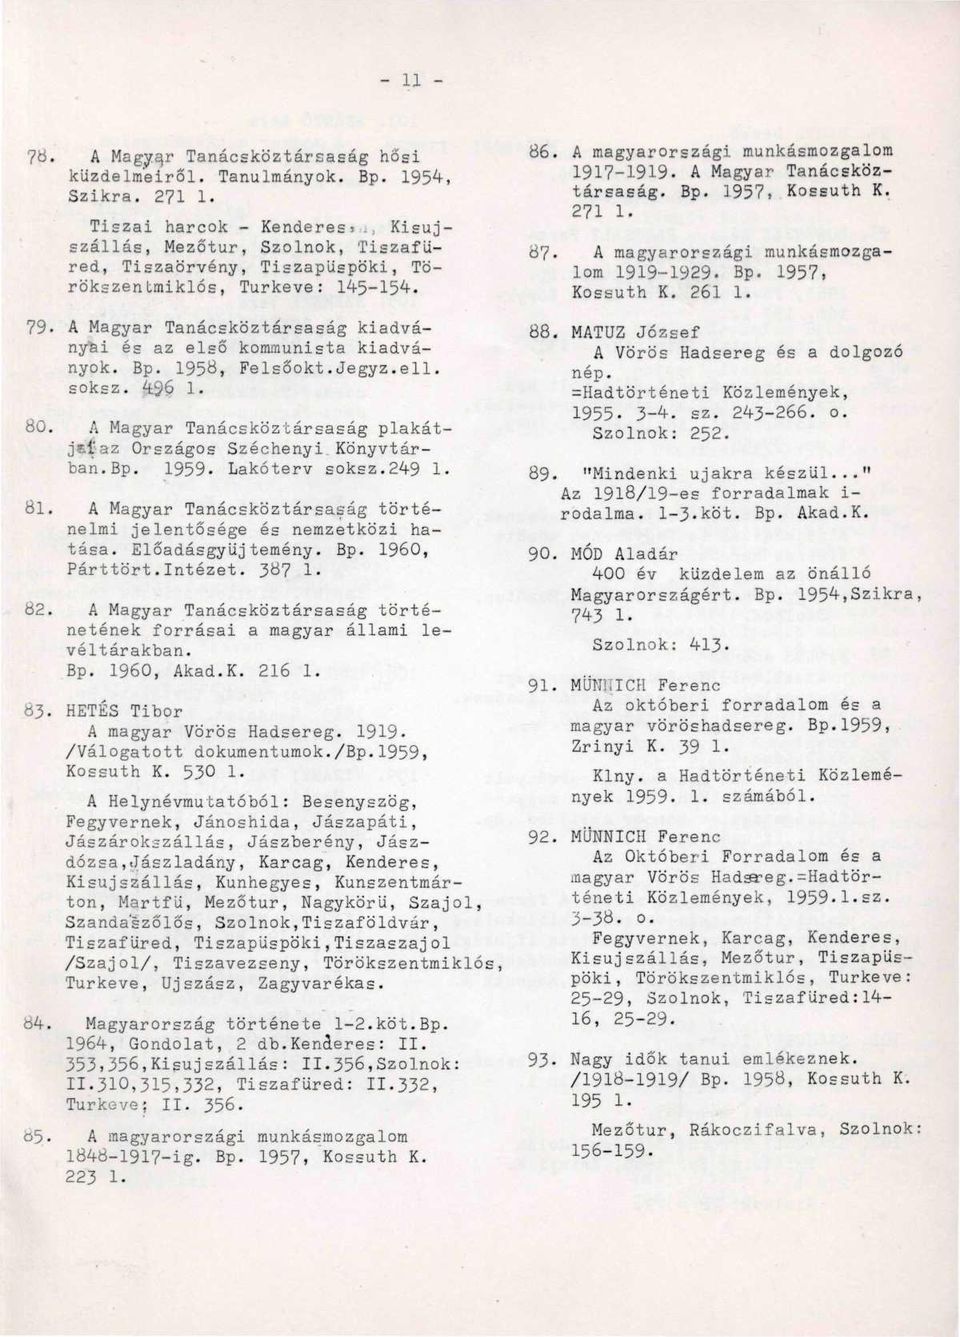 1956, Felsőokt.Jegyz.ell. soksz. 49.6 1. 80. A Magyar Tanácsköztársaság plakátje.t-az Országos Széchenyi Könyvtárban.Bp. 1959. Lakóterv soksz.249 1. öl.